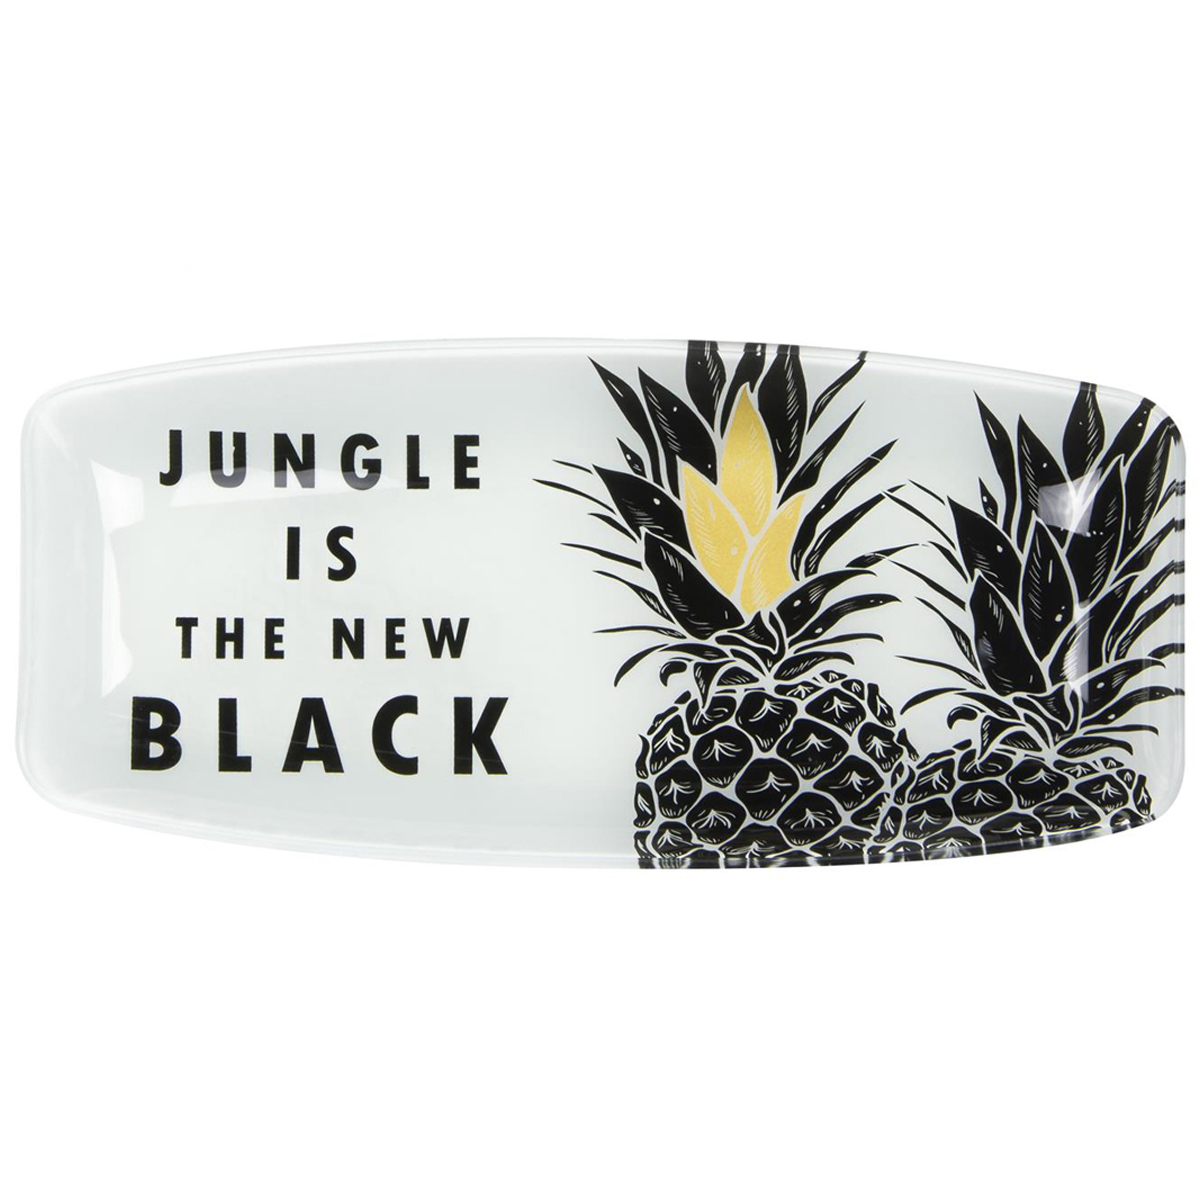 Plateau coupelle verre / plat à cake \'Tropical\' noir blanc doré (ananas - jungle is the new black) - 29x135 cm - [Q7998]